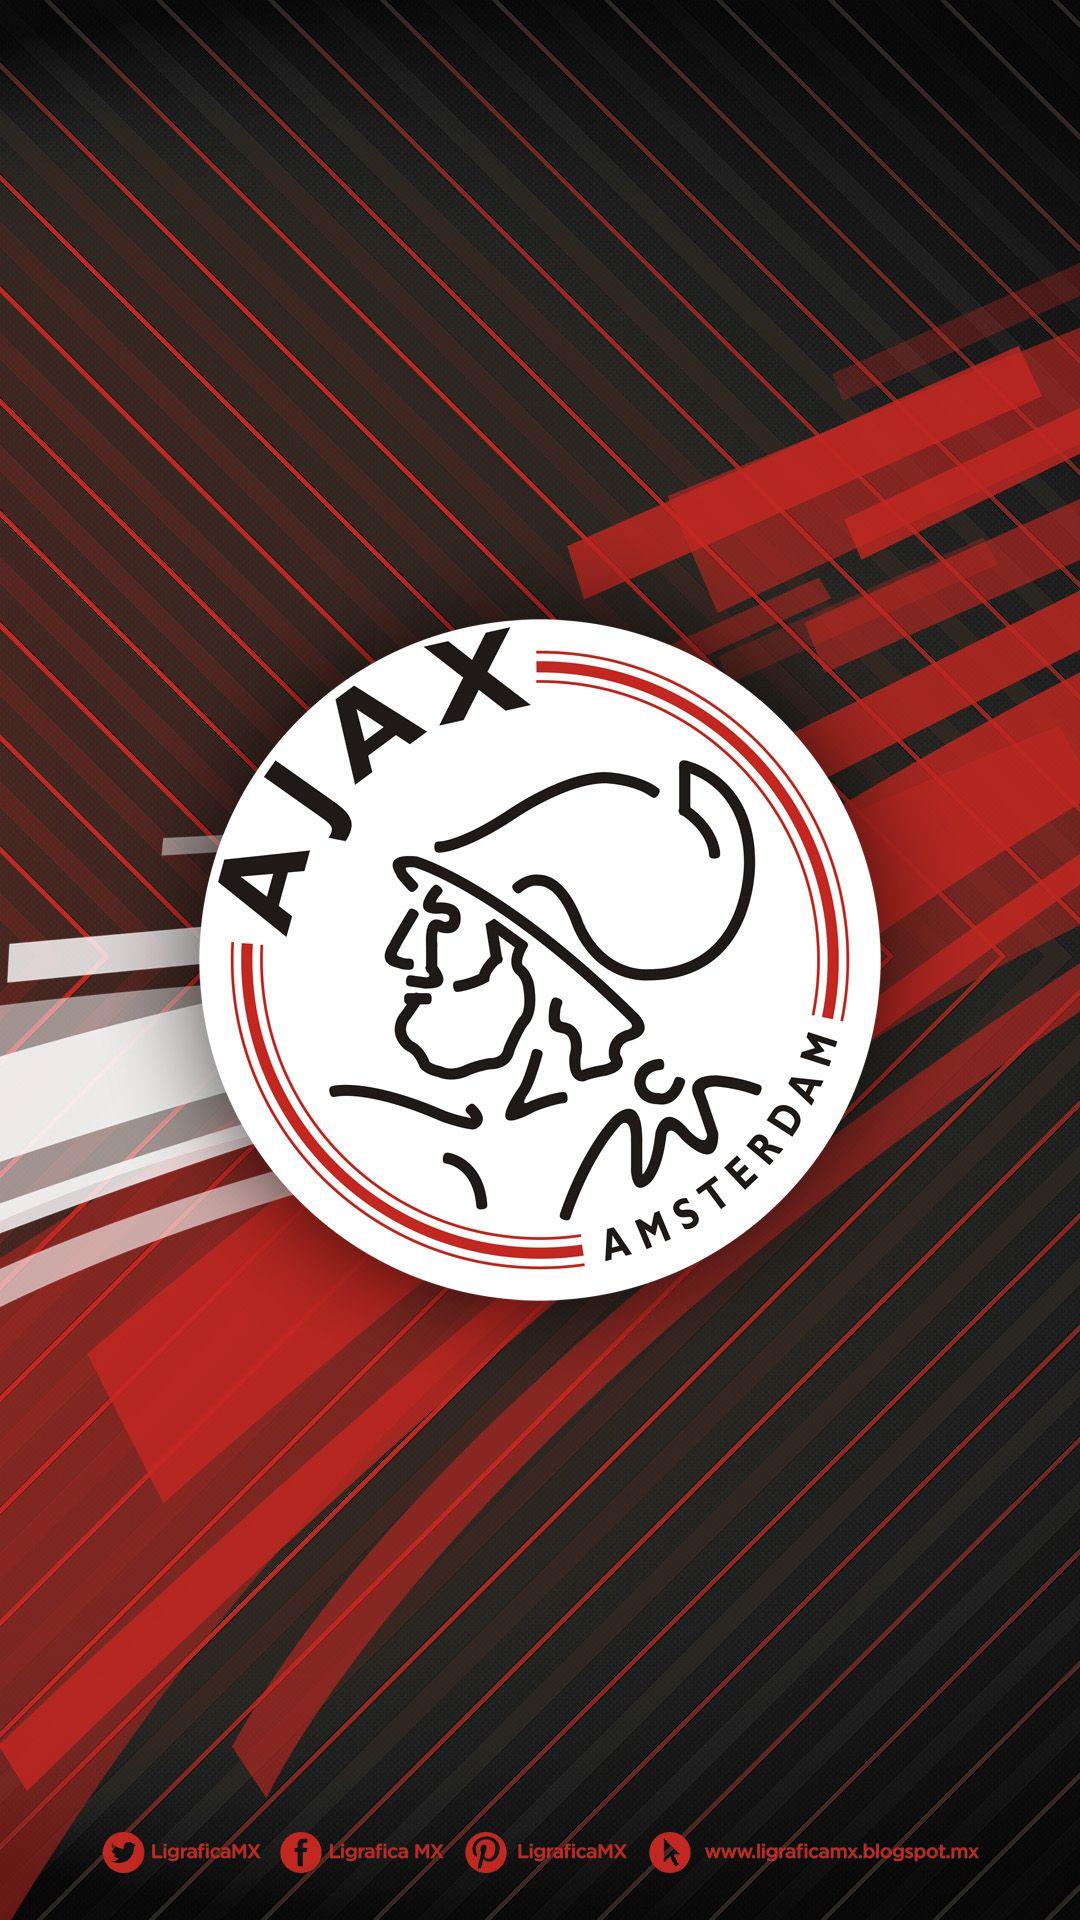 AJAX • LigraficaMX 160214CTG(1). Football. Football, Soccer, Afc ajax